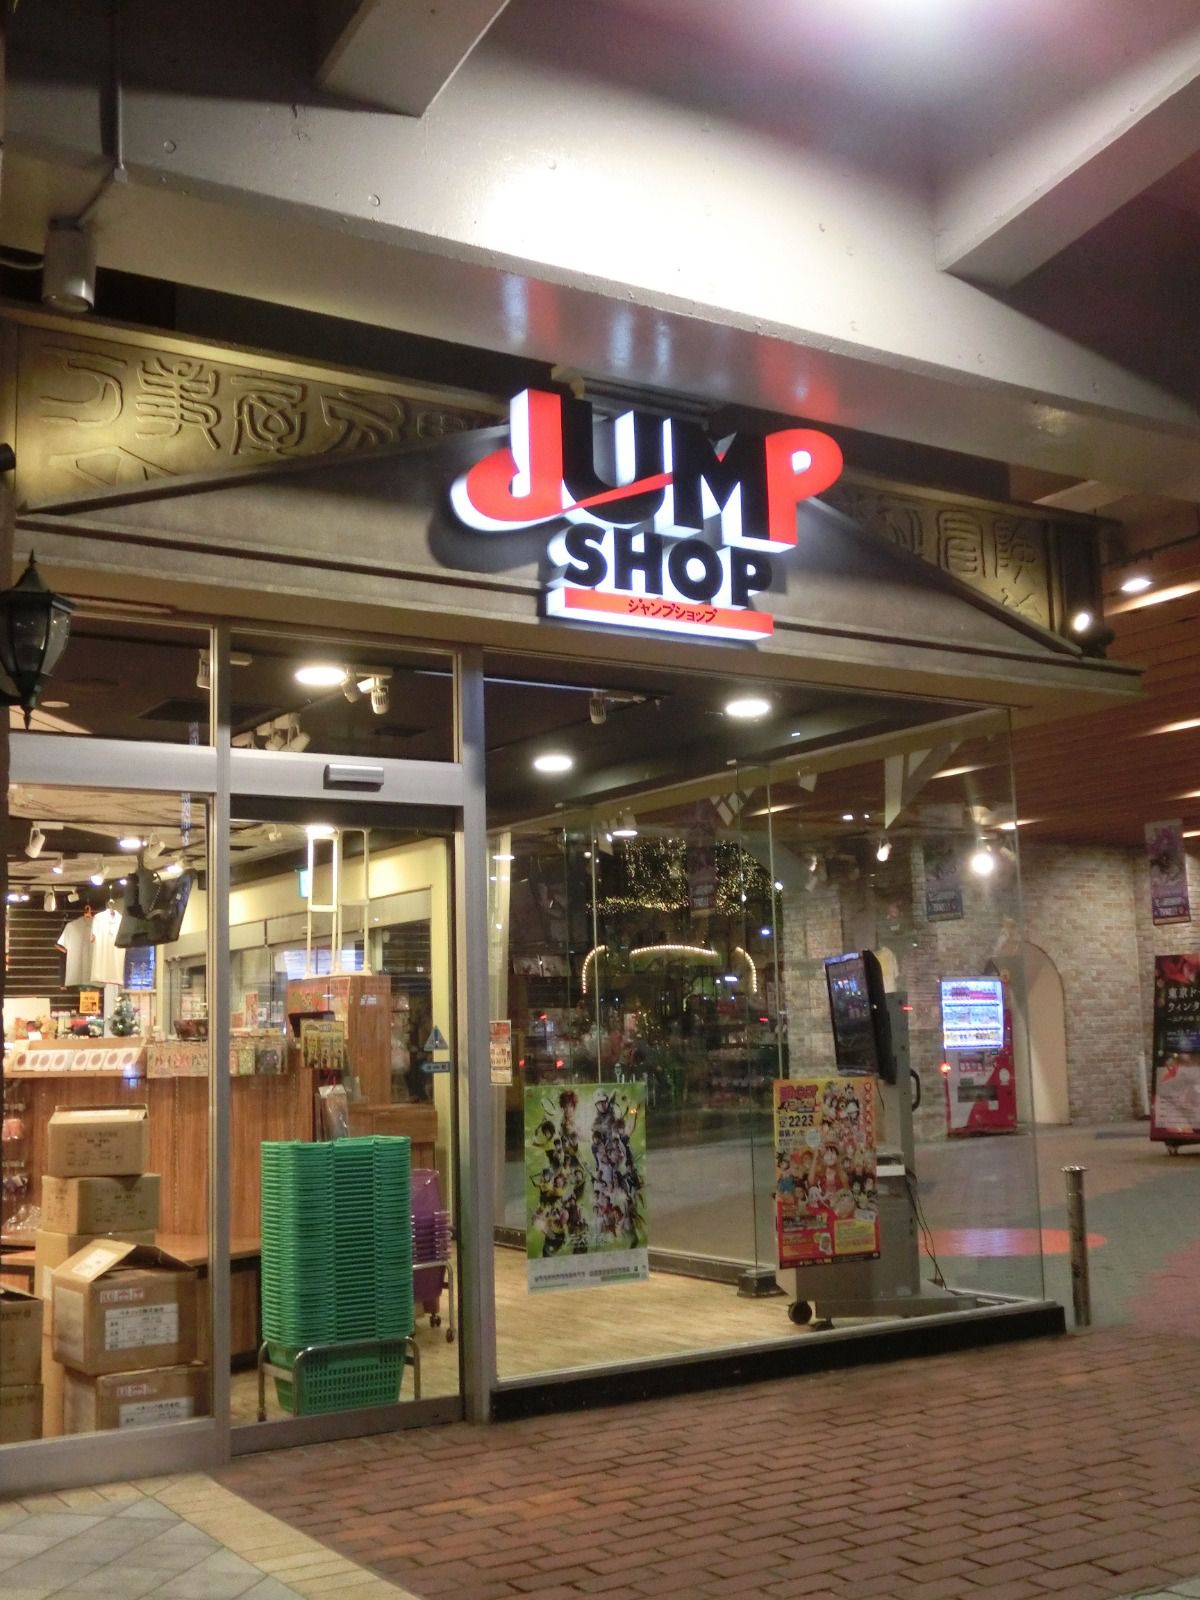 Janp Shop ジャンプ ショップ 東京ドームシティ店 Retrip リトリップ